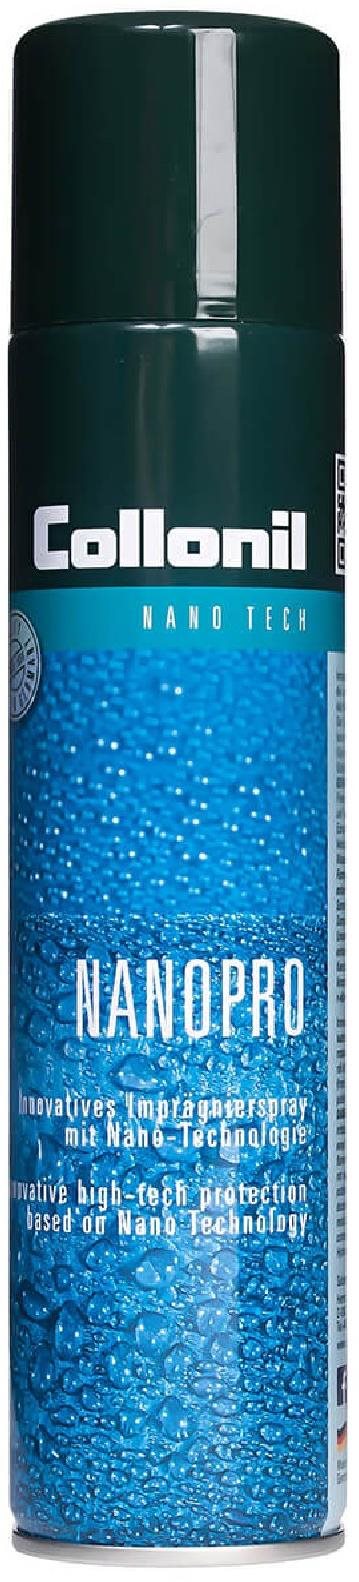 Collonil Nano Pro 300 ml